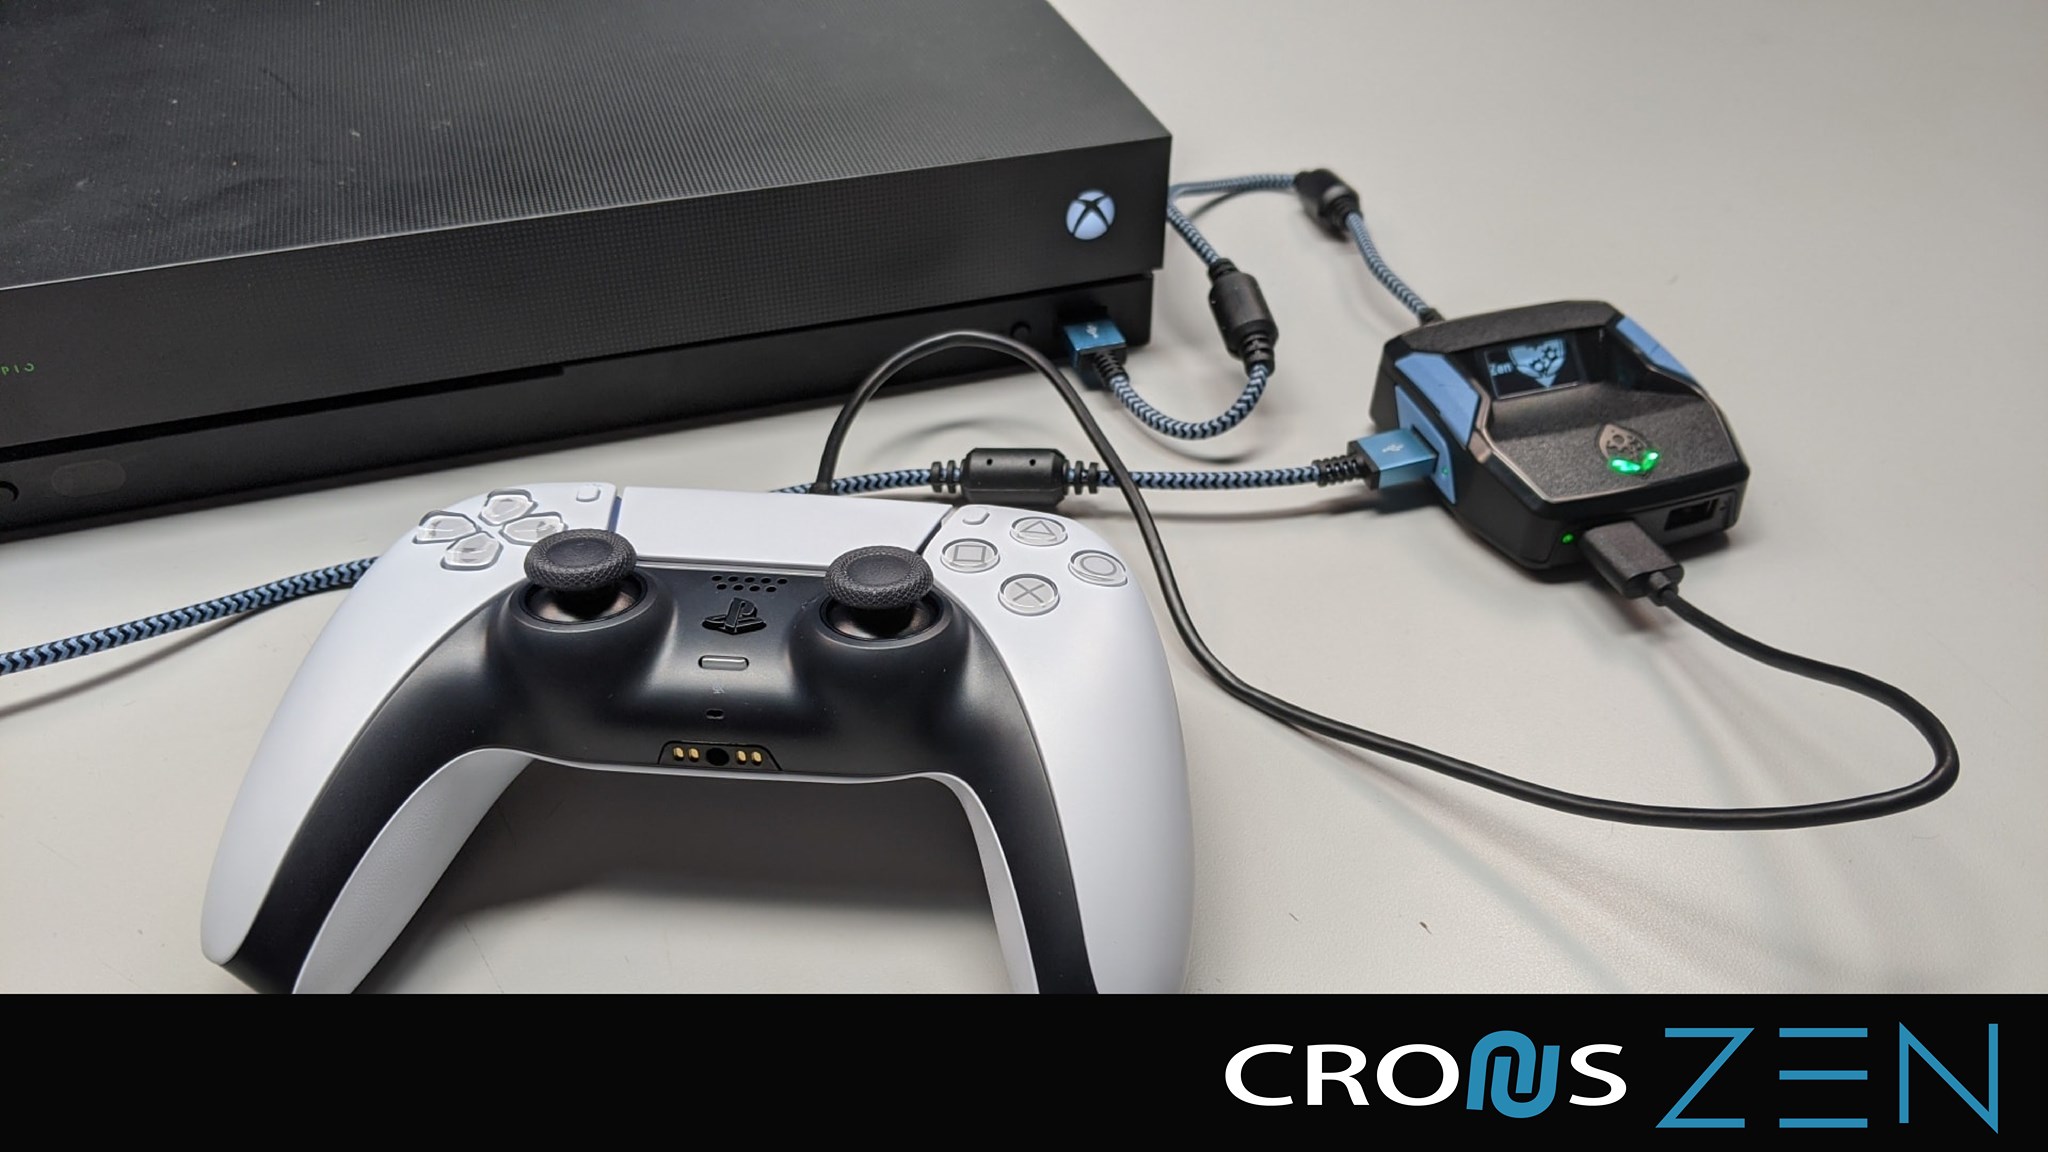 Cronuszen Cronuszen クロノス ゼン Ps5コントローラーをps4 Xbox One Switchに接続して使える最強コンバーター クロノス ゼン Cronus Zen 新しいファームウェアv2 0 9 Beta 12 が公開されました サポートしてくれます Ps5コントローラーを使い